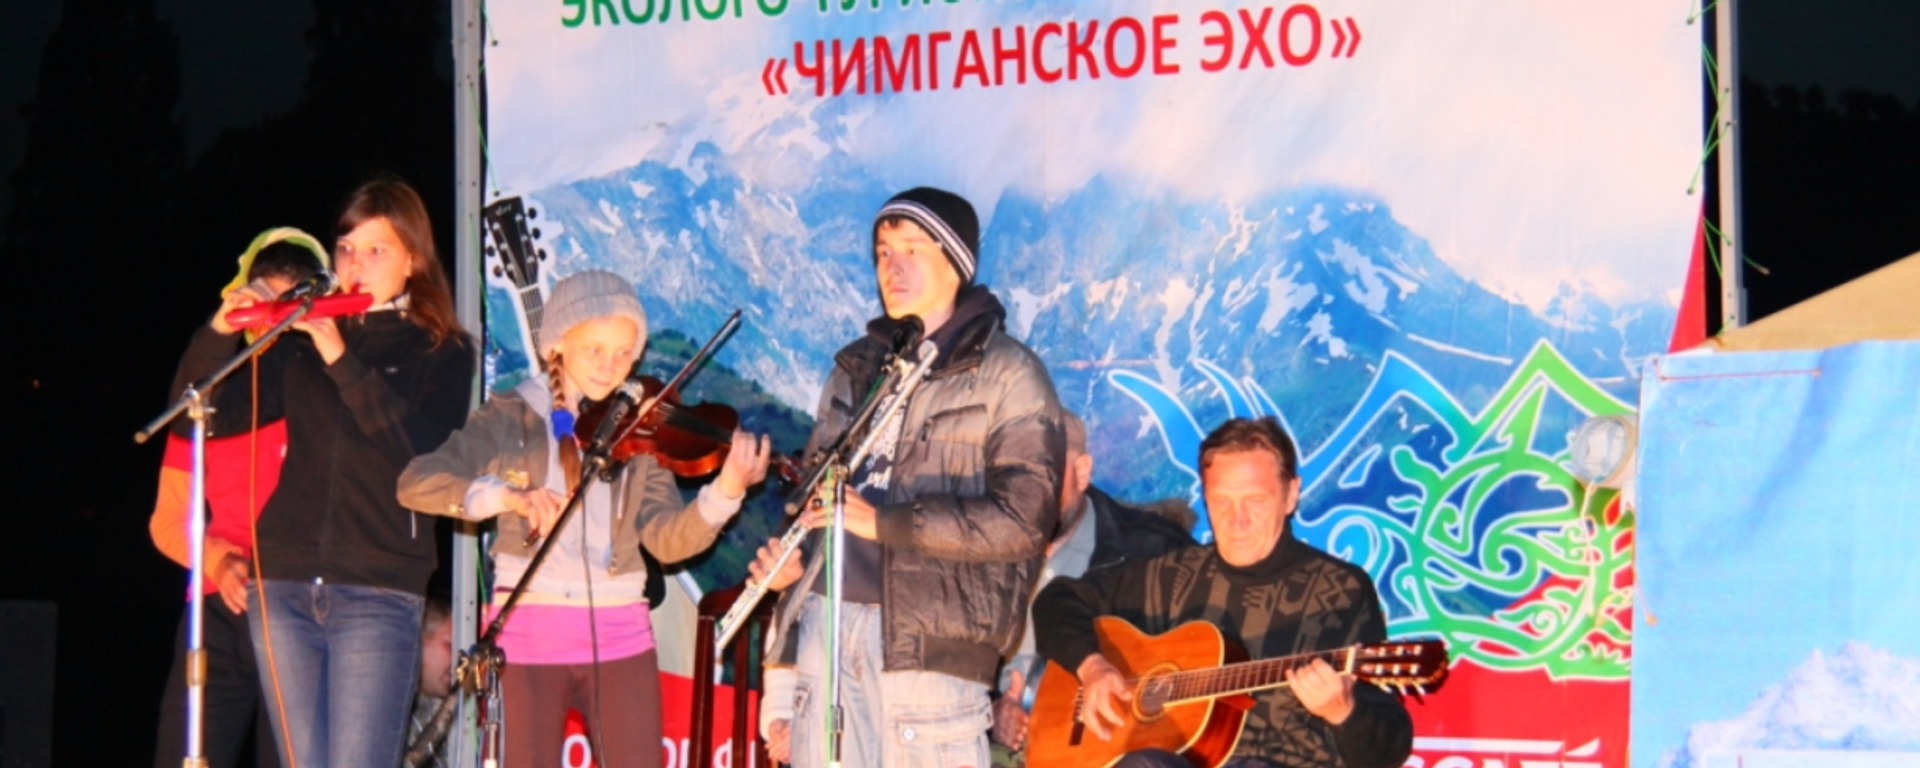 Юбилейный фестиваль бардовской песни «Чимганское эхо» пройдет в июне - Sputnik Узбекистан, 1920, 06.05.2017